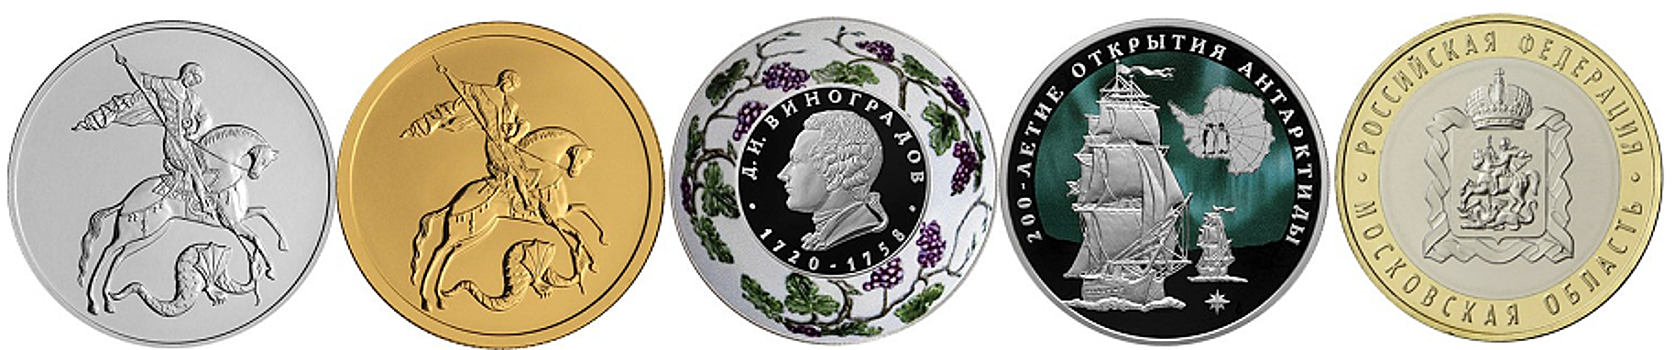 ЦБ выпускает монеты в честь создателя русского фарфора и открытия Антарктиды